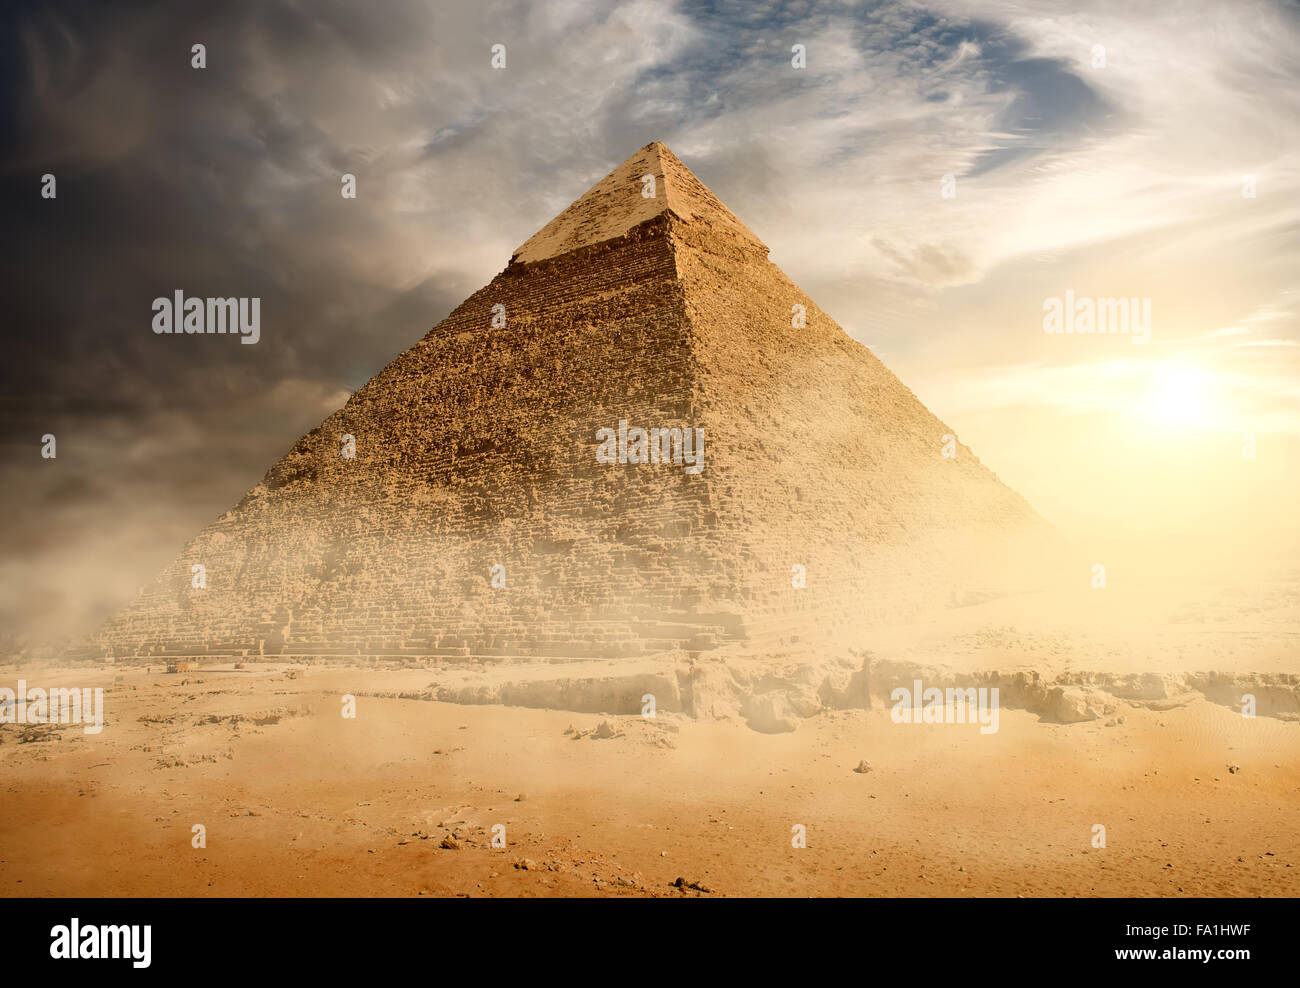 Pyramide im Sand Staub unter grauen Wolken Stockfoto